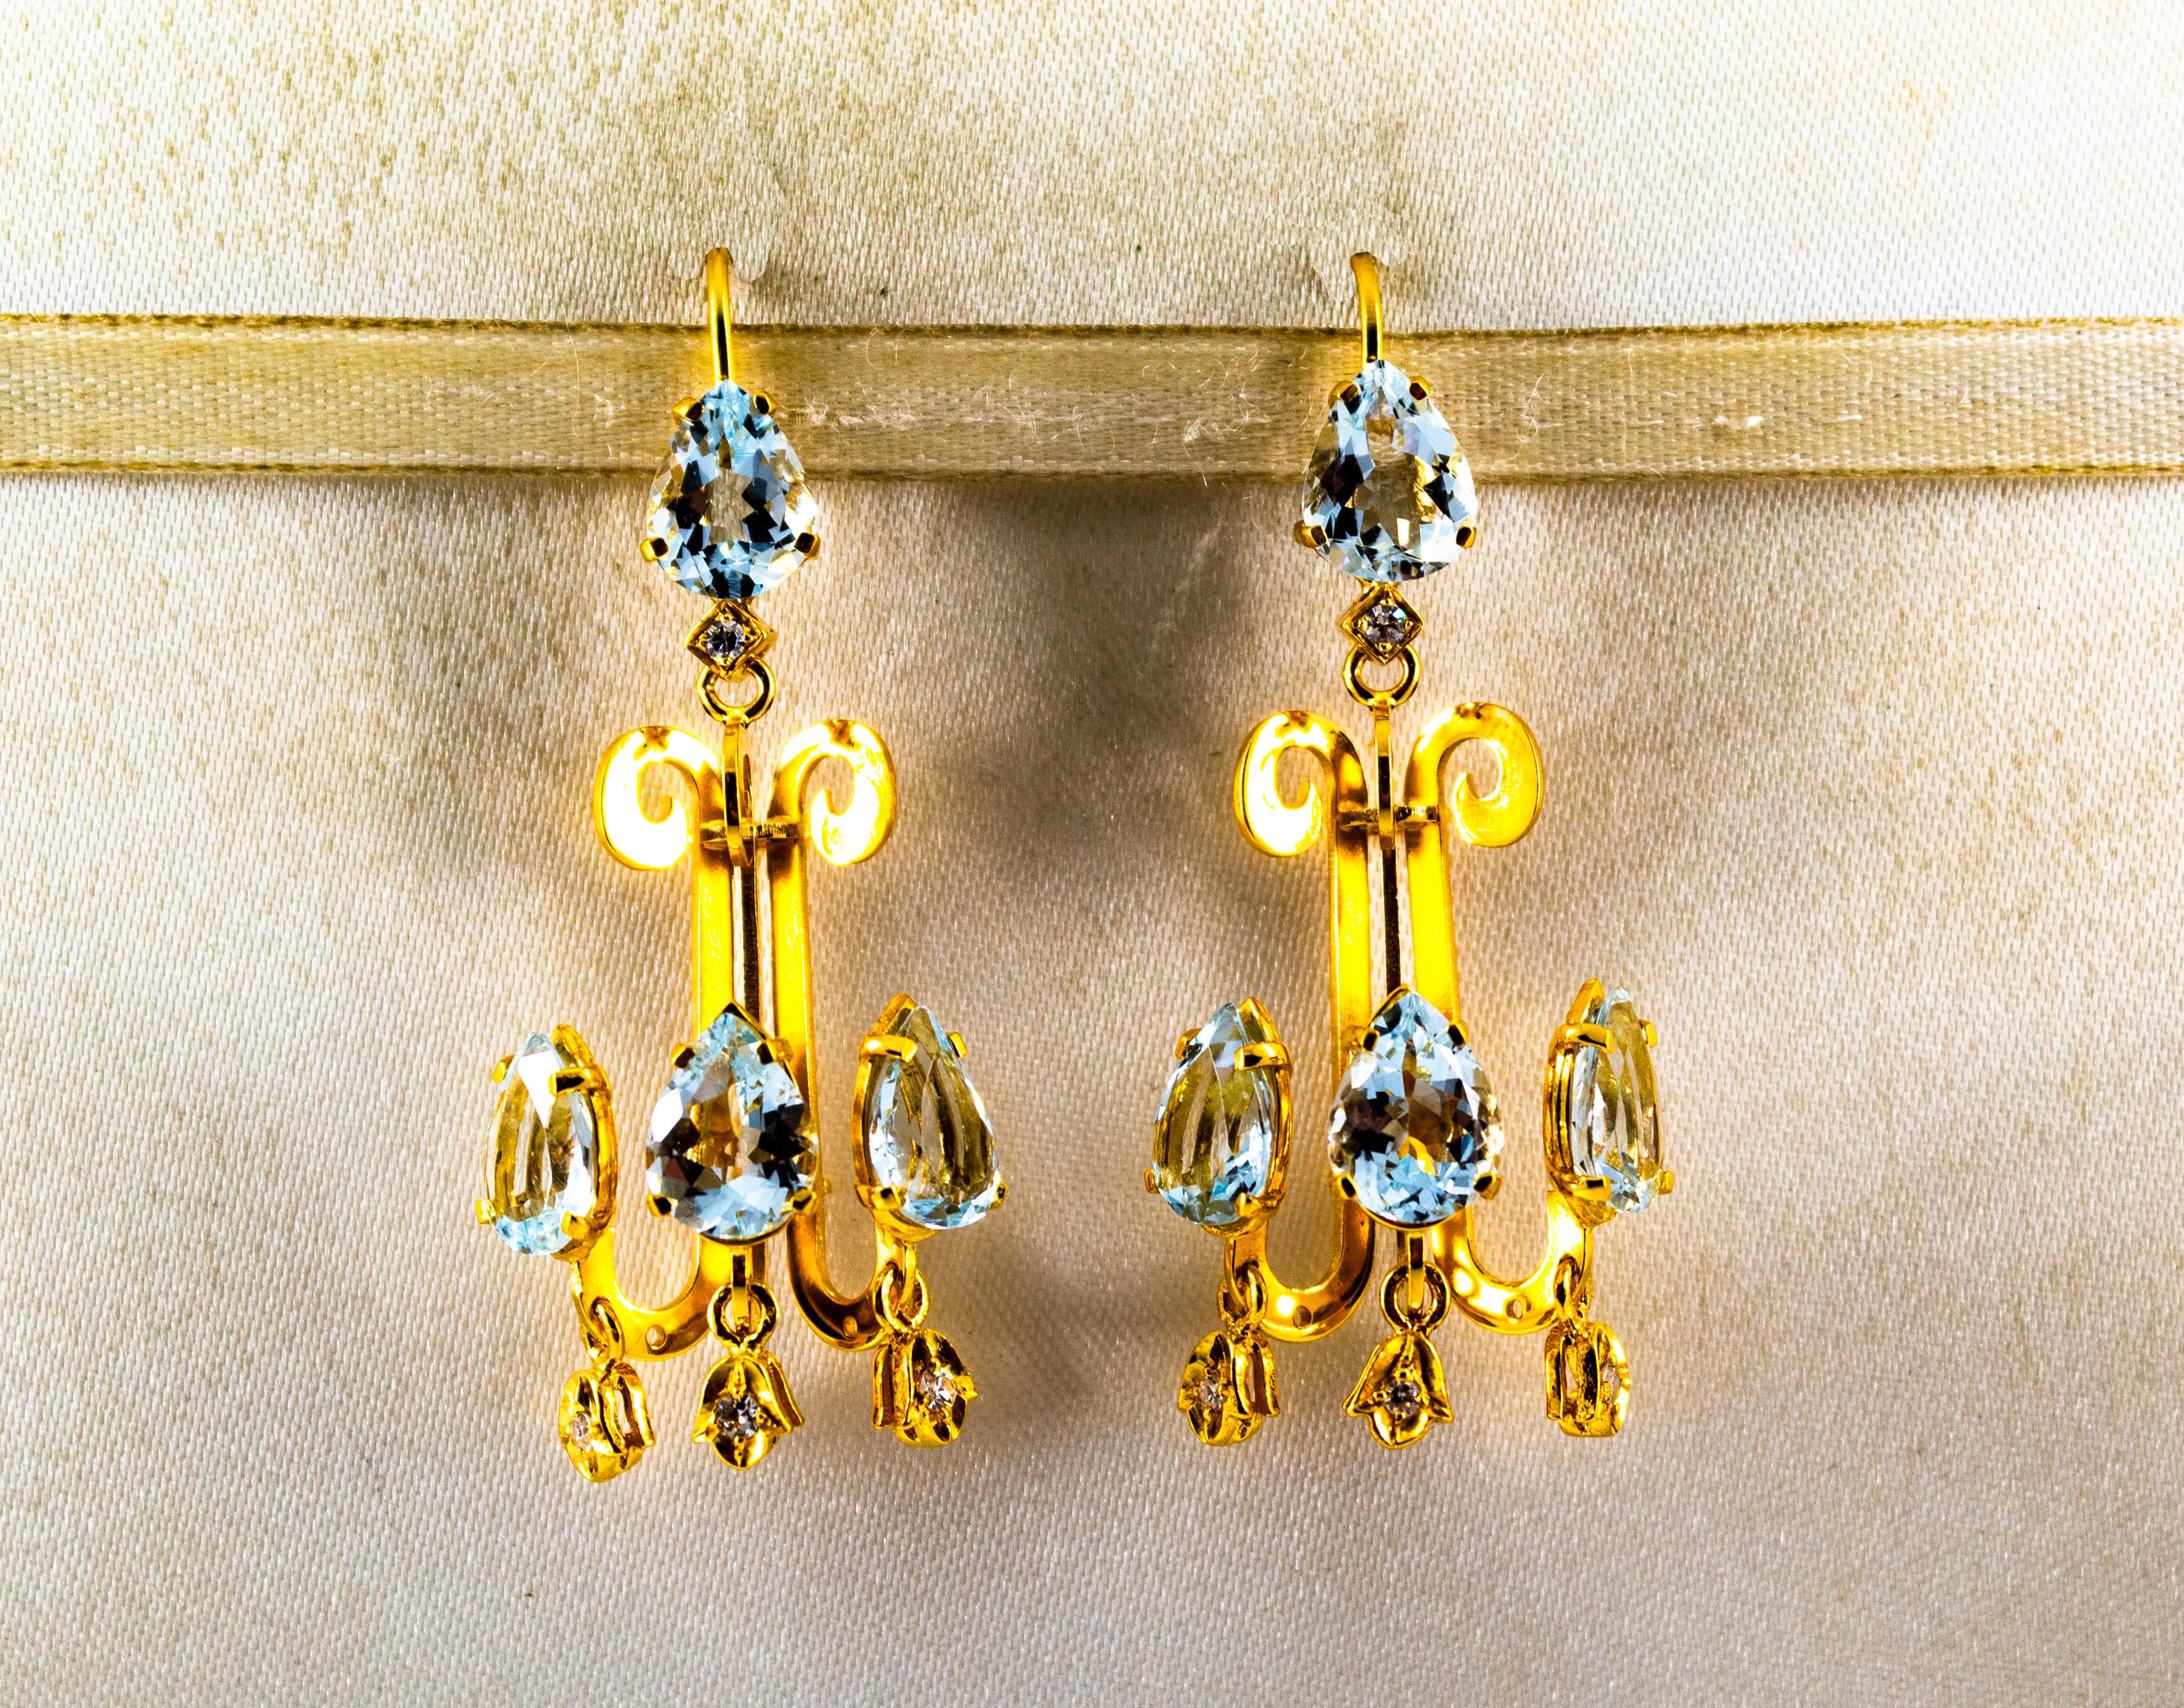 Diese Ohrstecker sind aus 14K Gelbgold gefertigt.
Diese Ohrringe haben 0,16 Karat weiße moderne Diamanten im Rundschliff.
Diese Ohrringe haben auch 10,20 Karat Aquamarine.
Diese Ohrringe sind auch mit Smaragden erhältlich.
Alle unsere Ohrringe haben